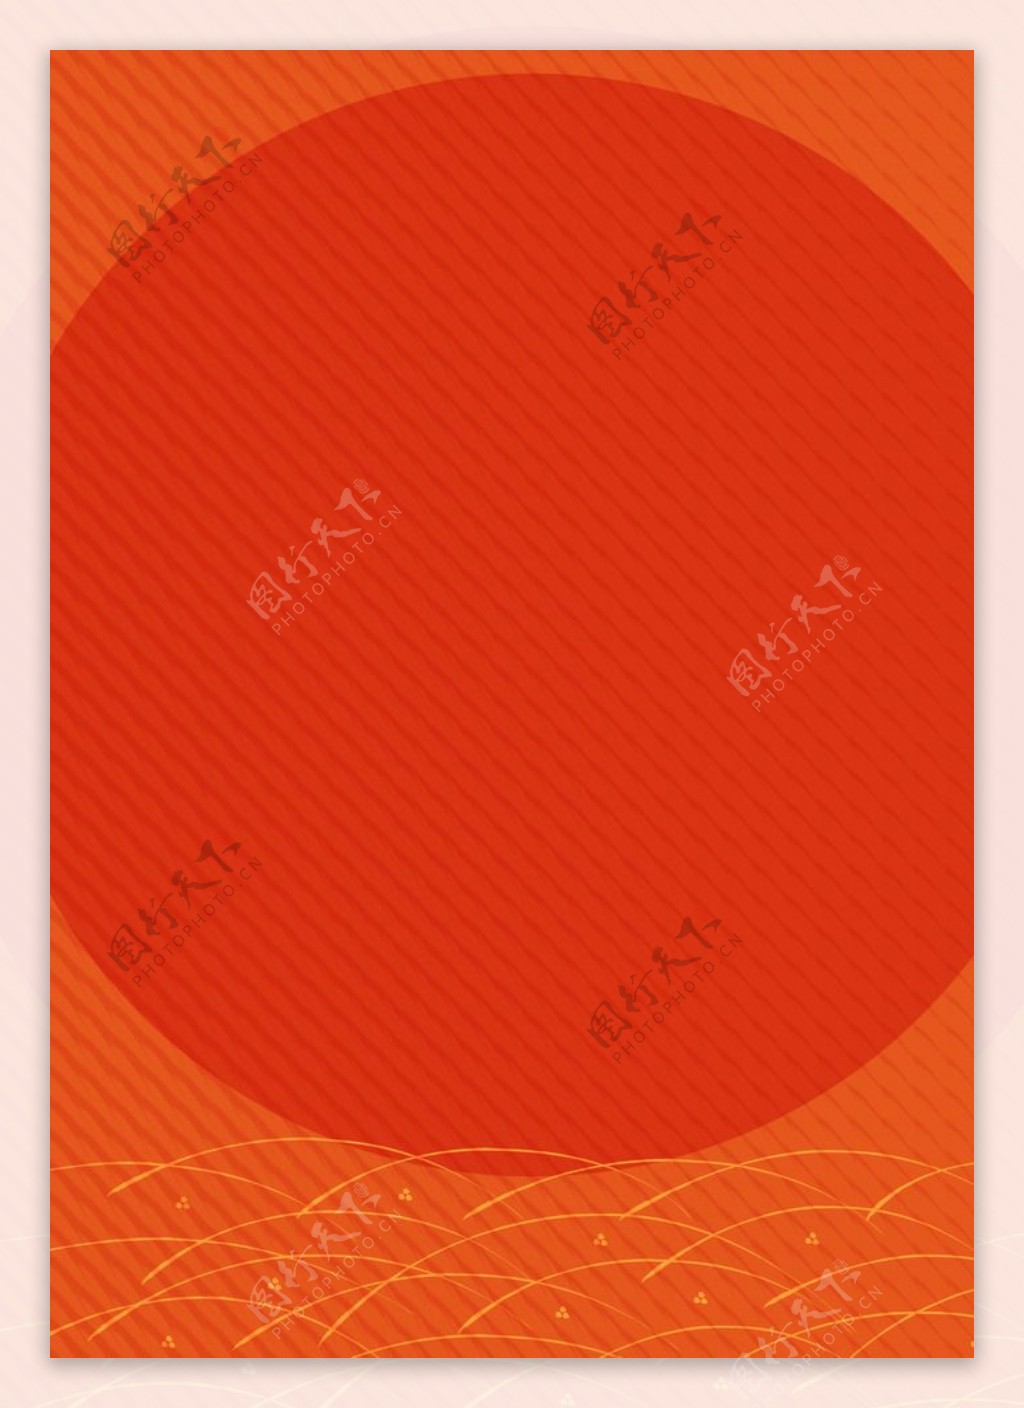 橙色衬红色圆圈斜纹背景图